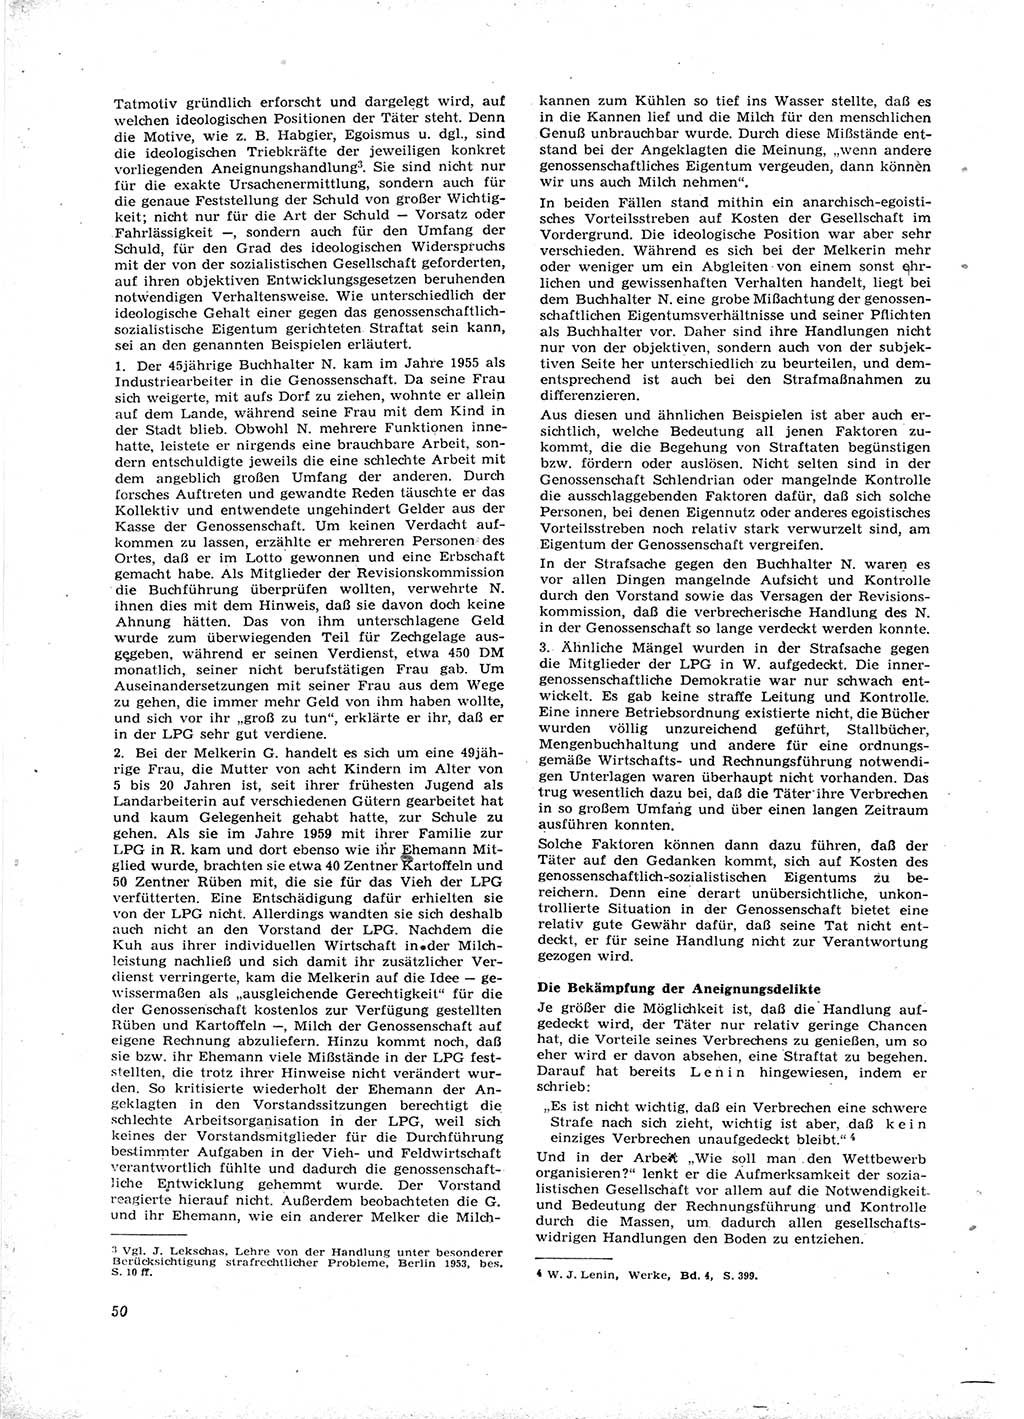 Neue Justiz (NJ), Zeitschrift für Recht und Rechtswissenschaft [Deutsche Demokratische Republik (DDR)], 16. Jahrgang 1962, Seite 50 (NJ DDR 1962, S. 50)